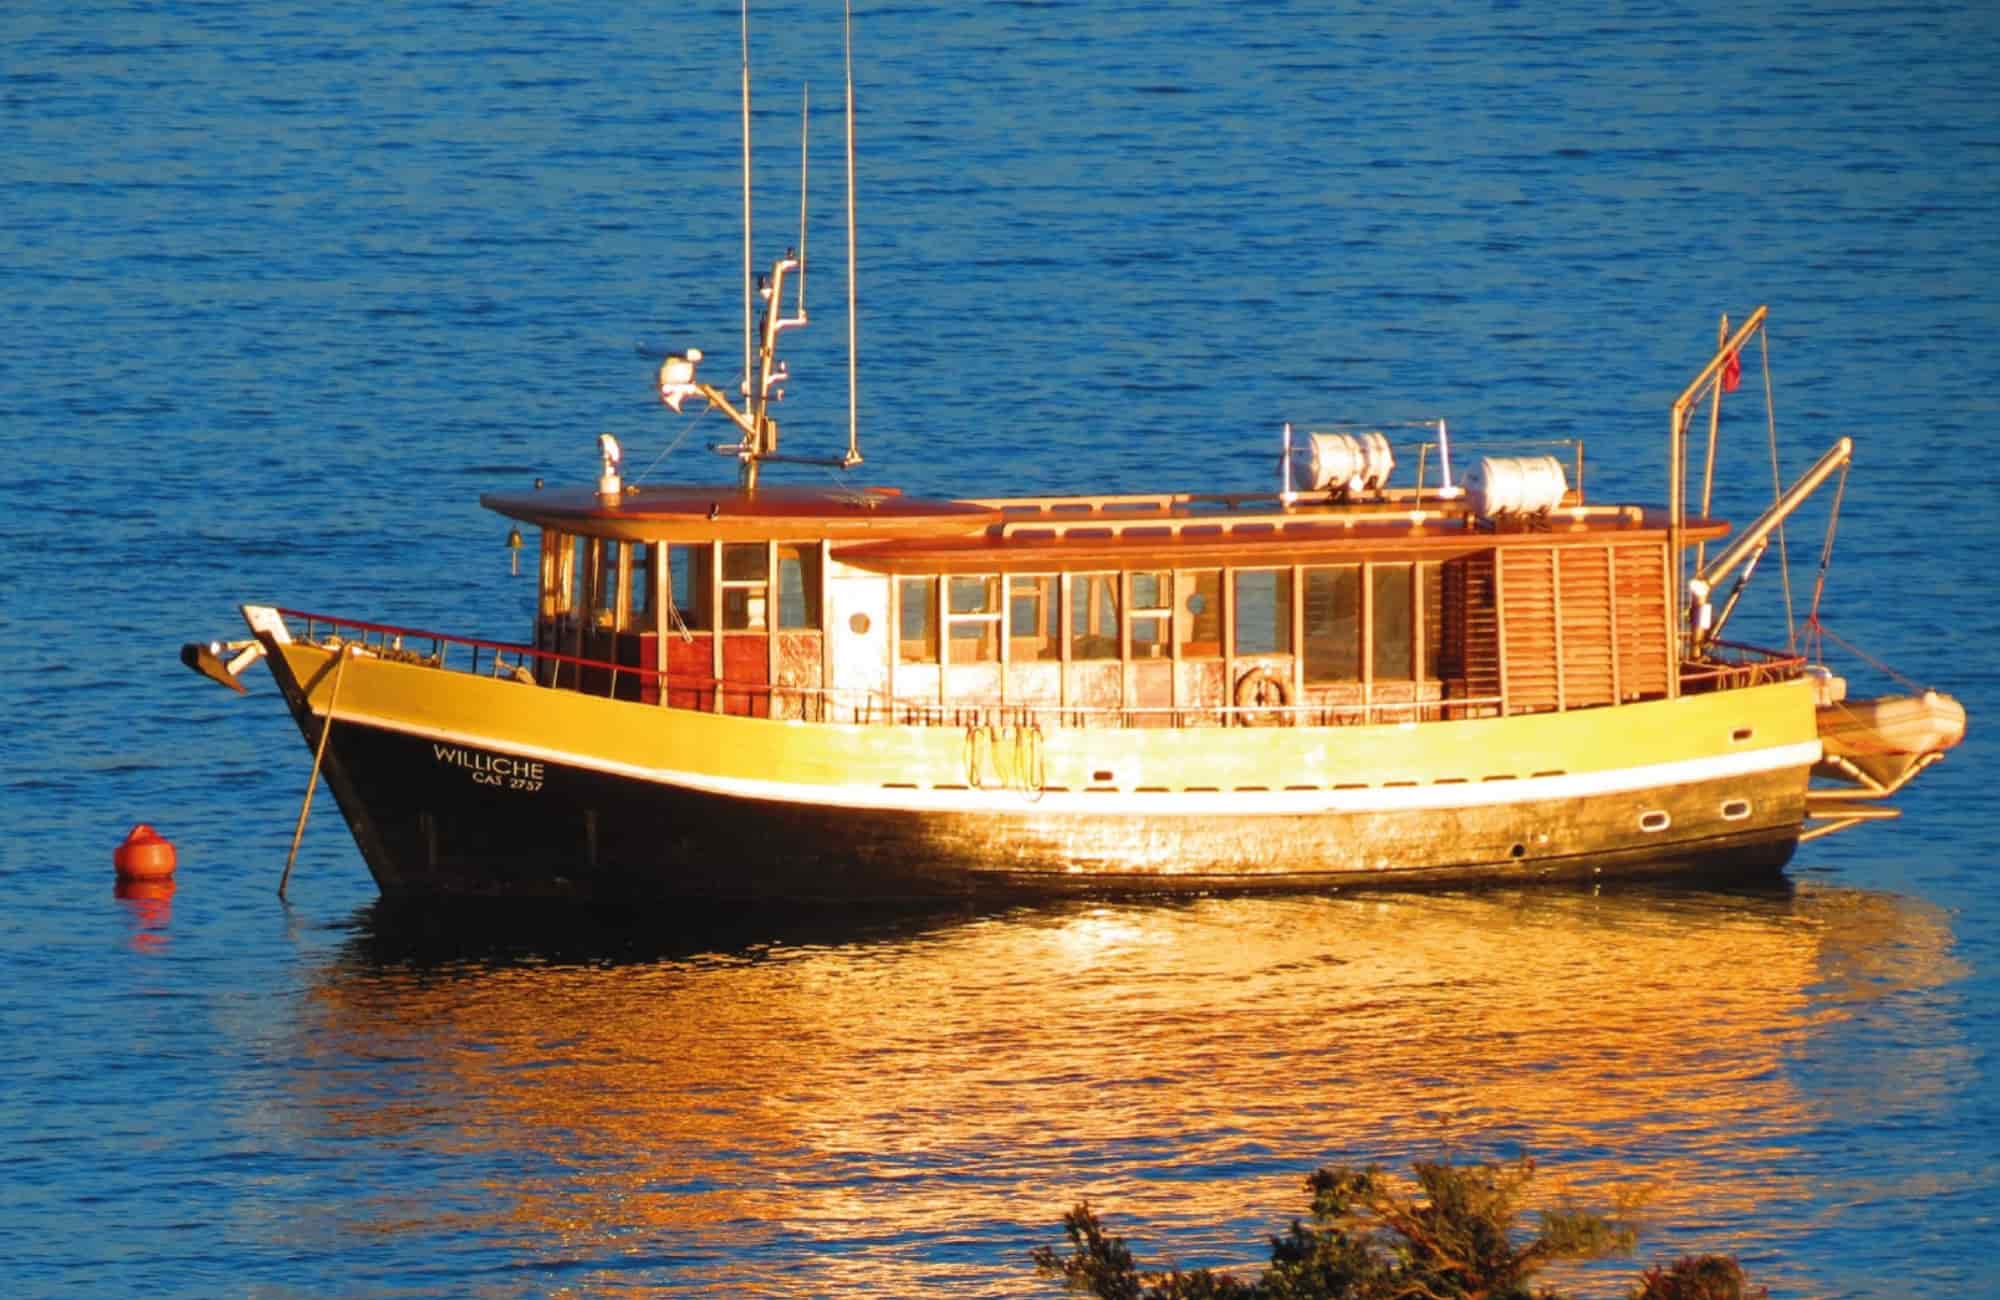 Voyage Chiloé - Balade en bateau sur les eaux chilotes - Amplitudes